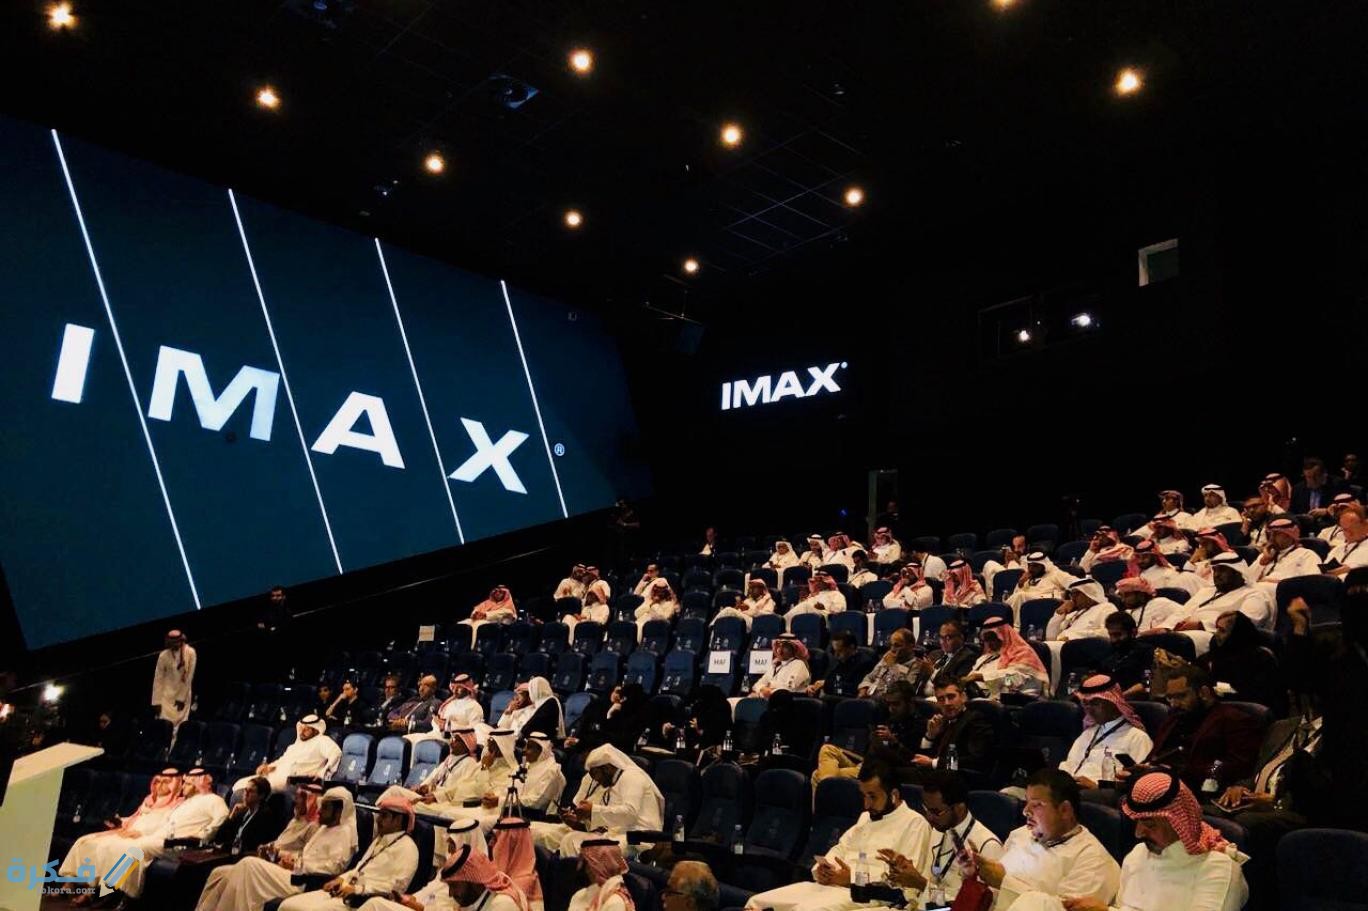 أسعار تذاكر السينما في الرياض - موقع فكرة